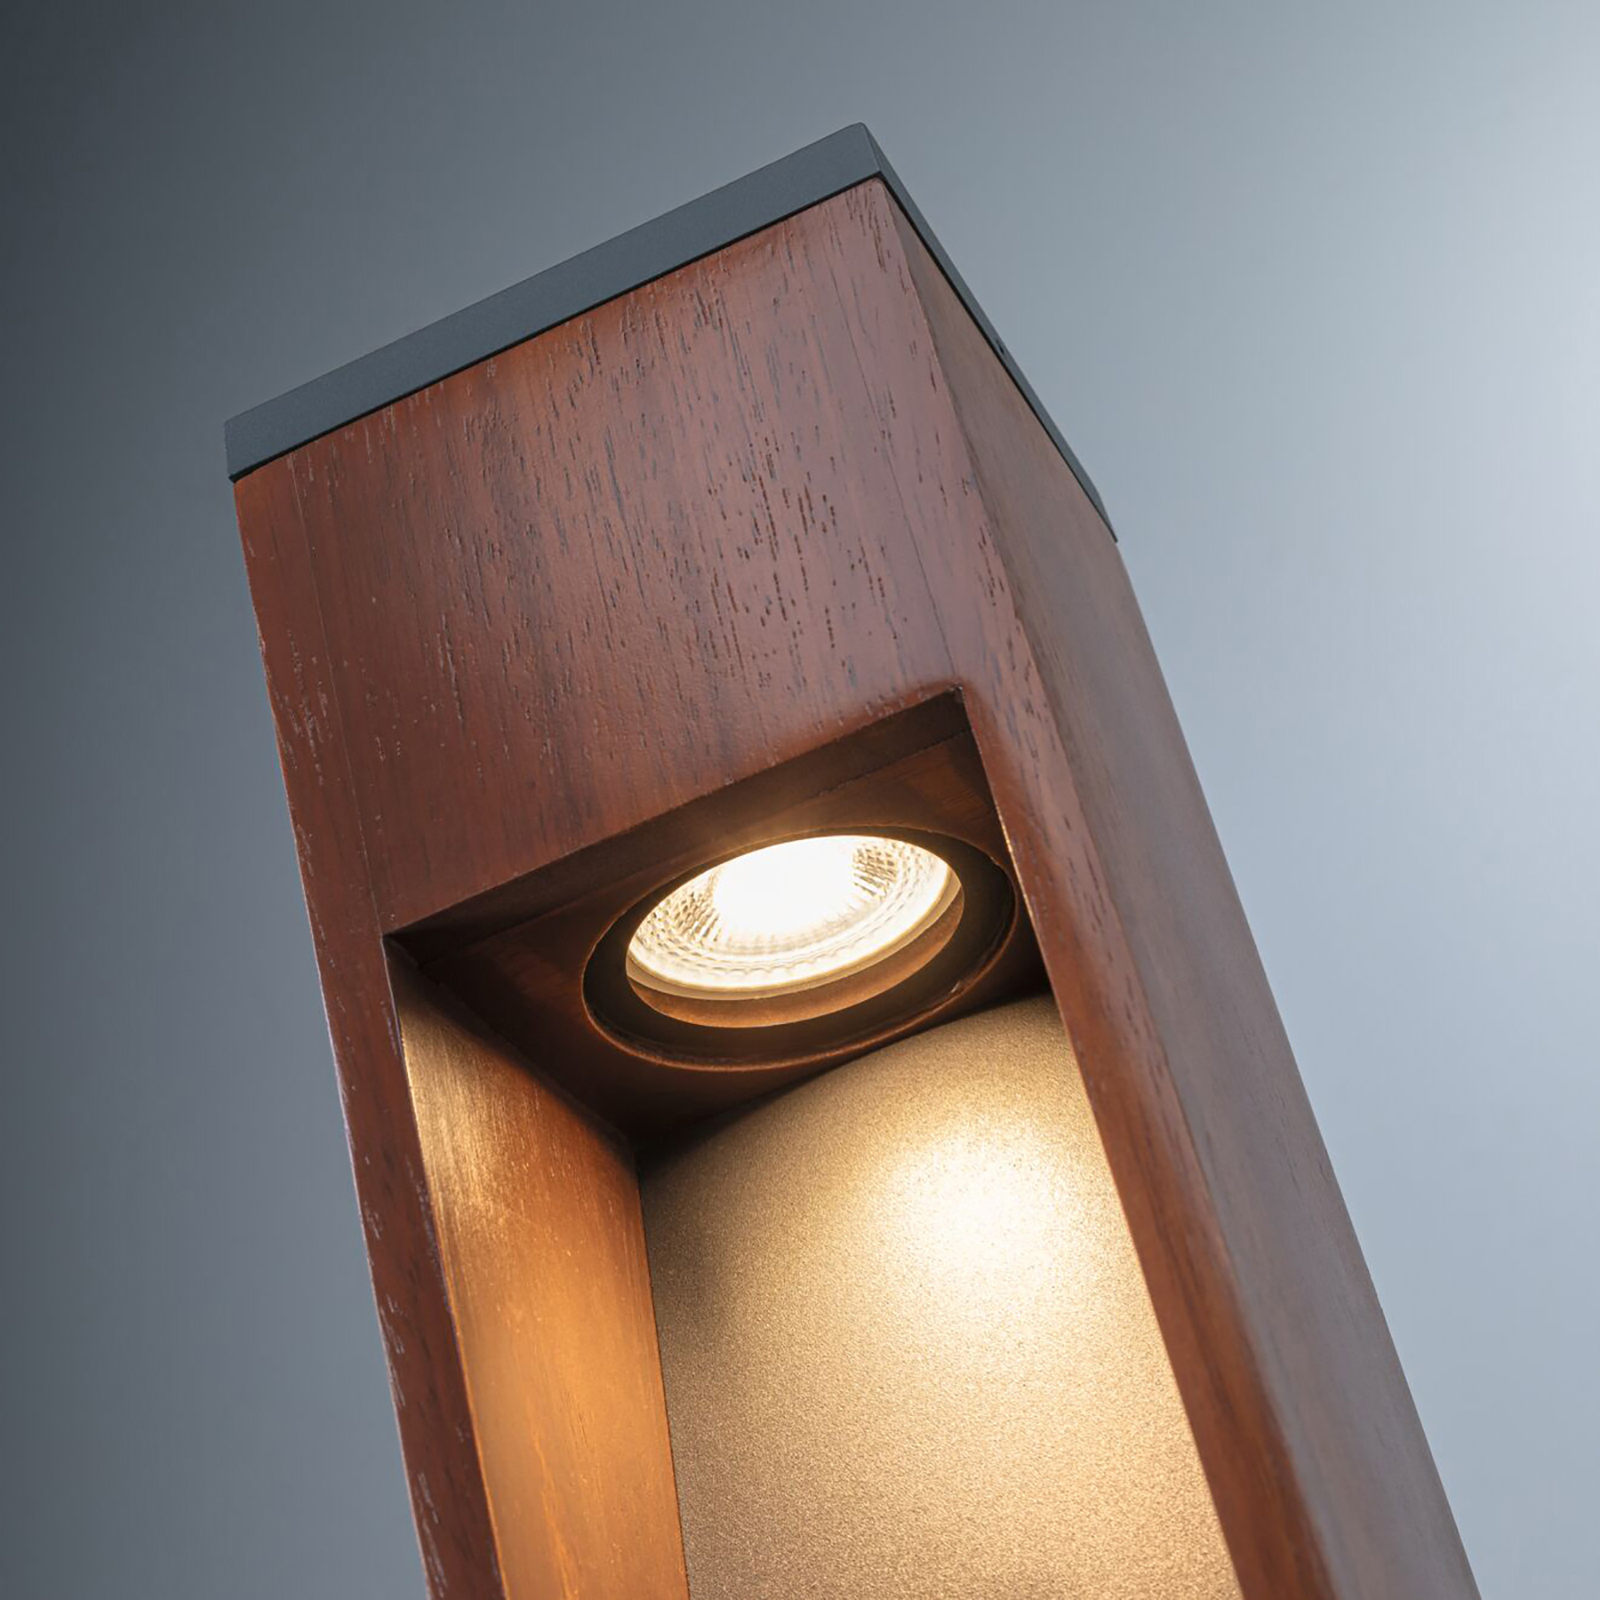 Paulmann Trabia LED-sokkelbelysning i tre, høyde 40 cm